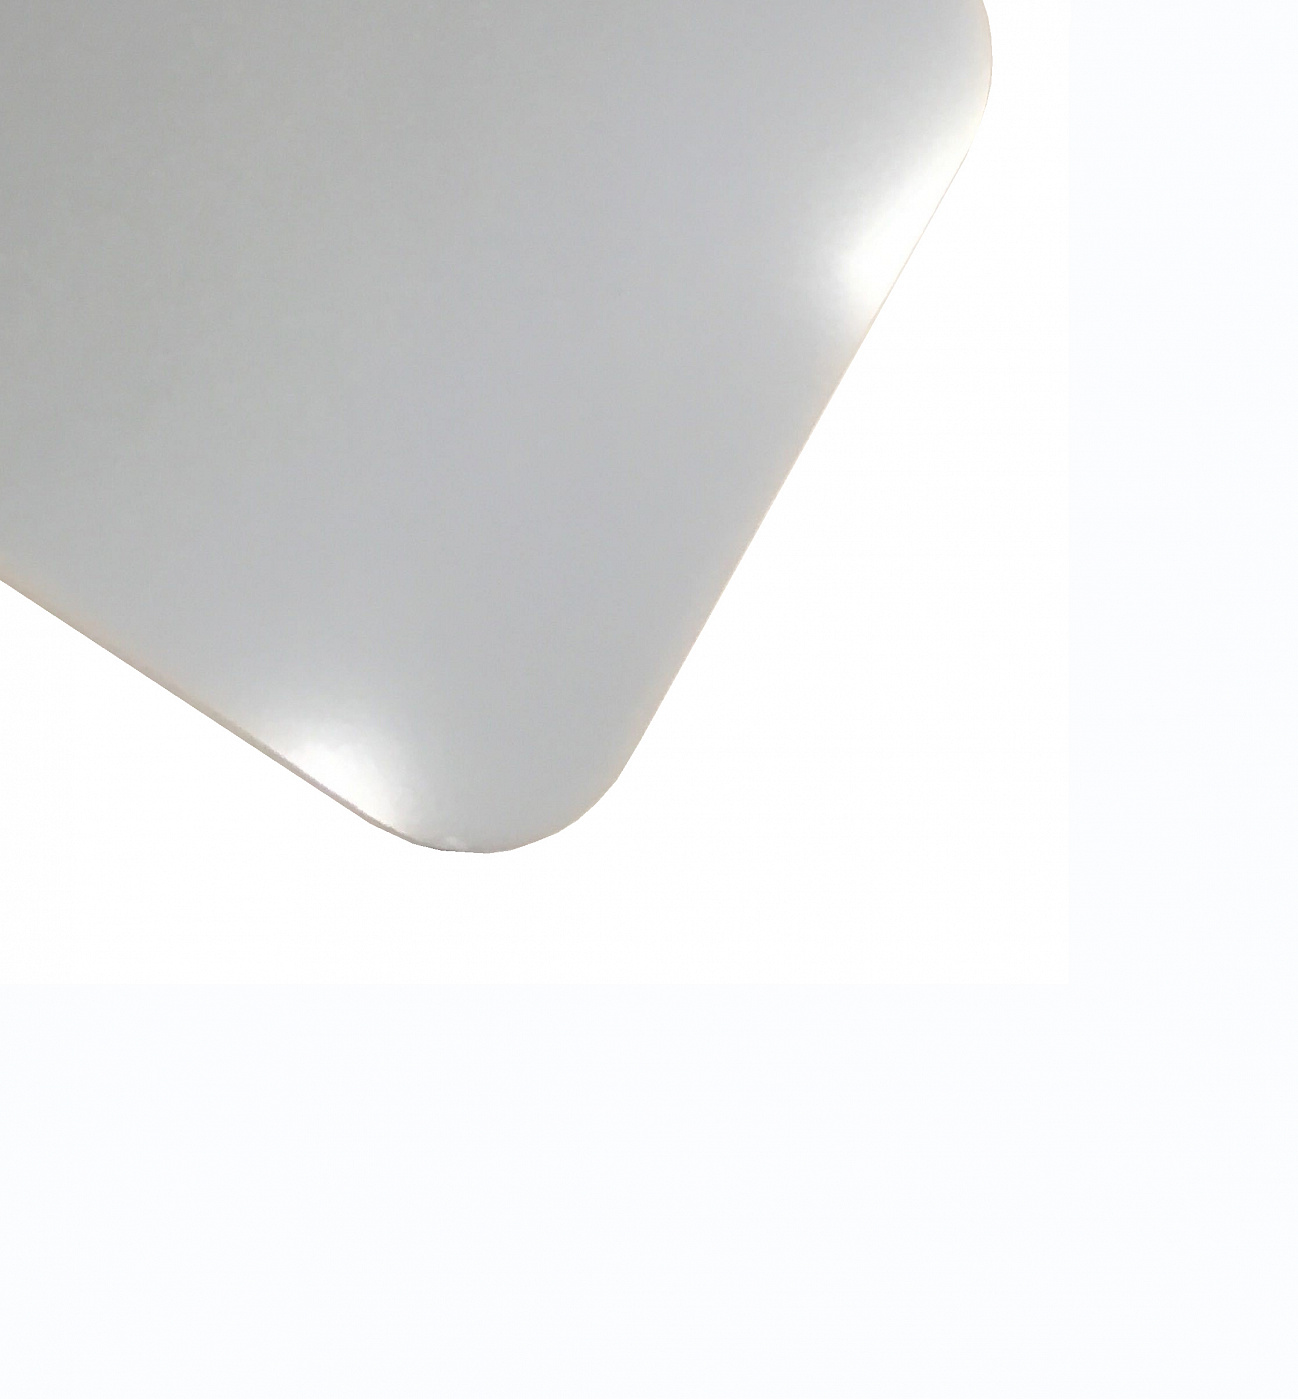 Планшет для пленэра из оргстекла 3 мм, под лист размера А5, цвет белый Dec-9082008 - фото 1